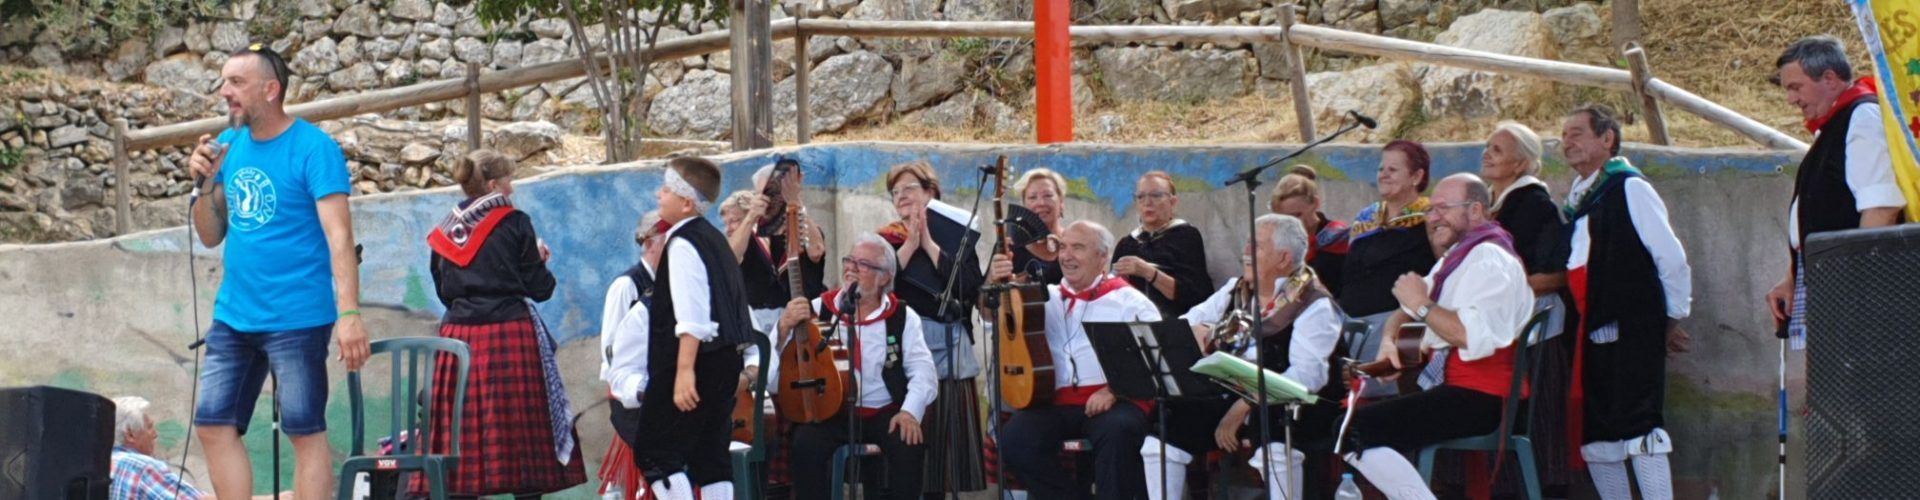 Les festes de Vallibona reforcen els lligams amb Vinaròs